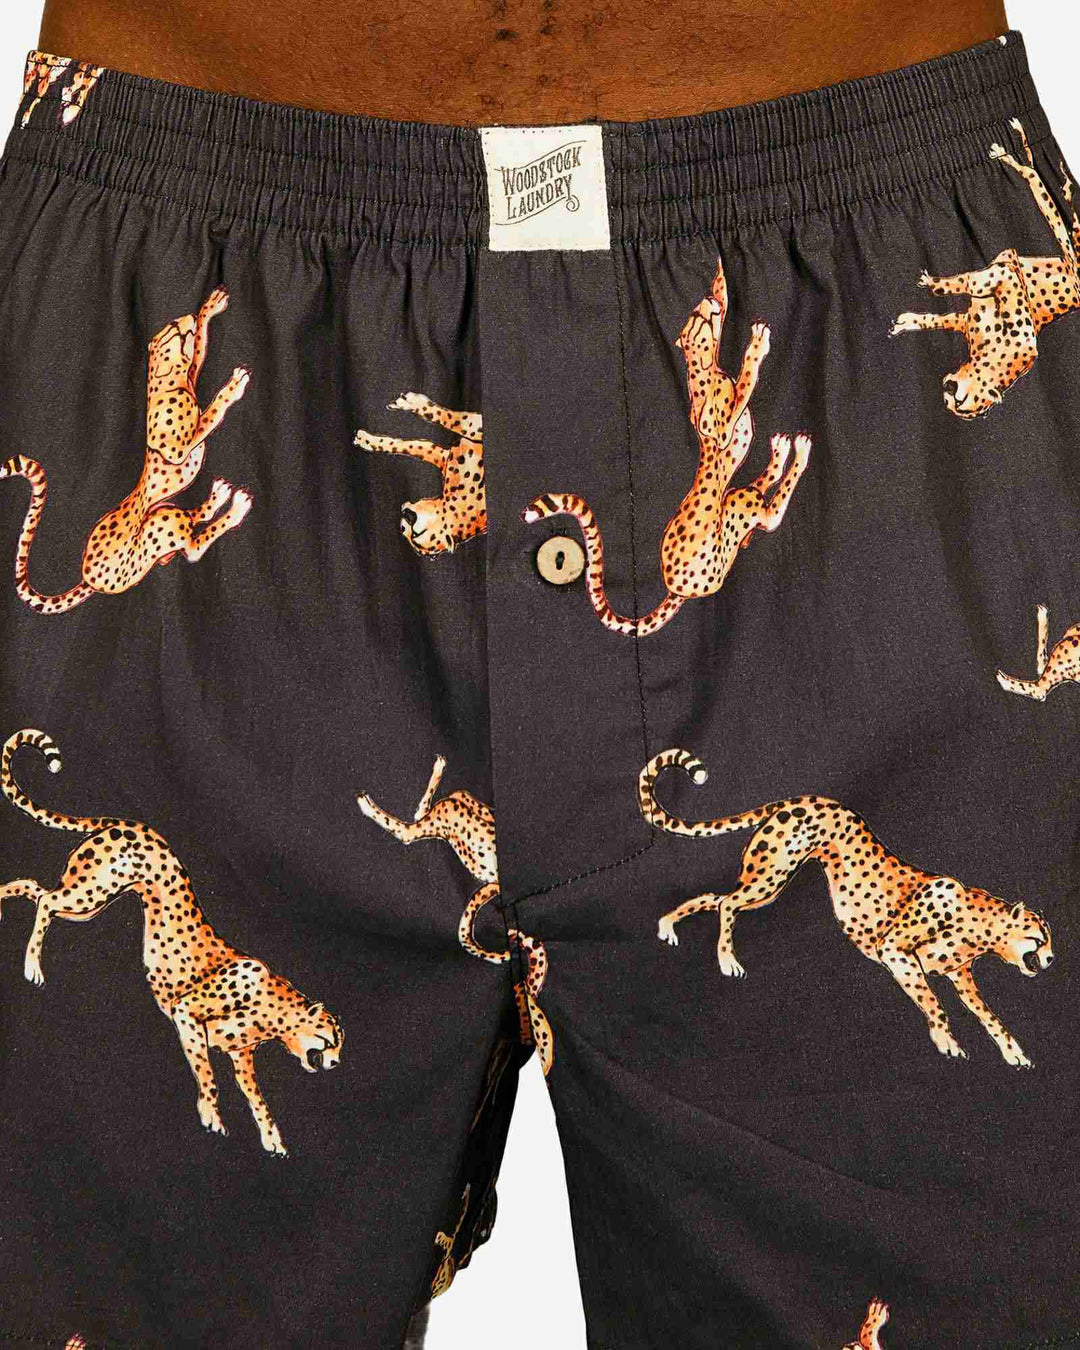 Mens boxer shorts - Jumping Cheetah